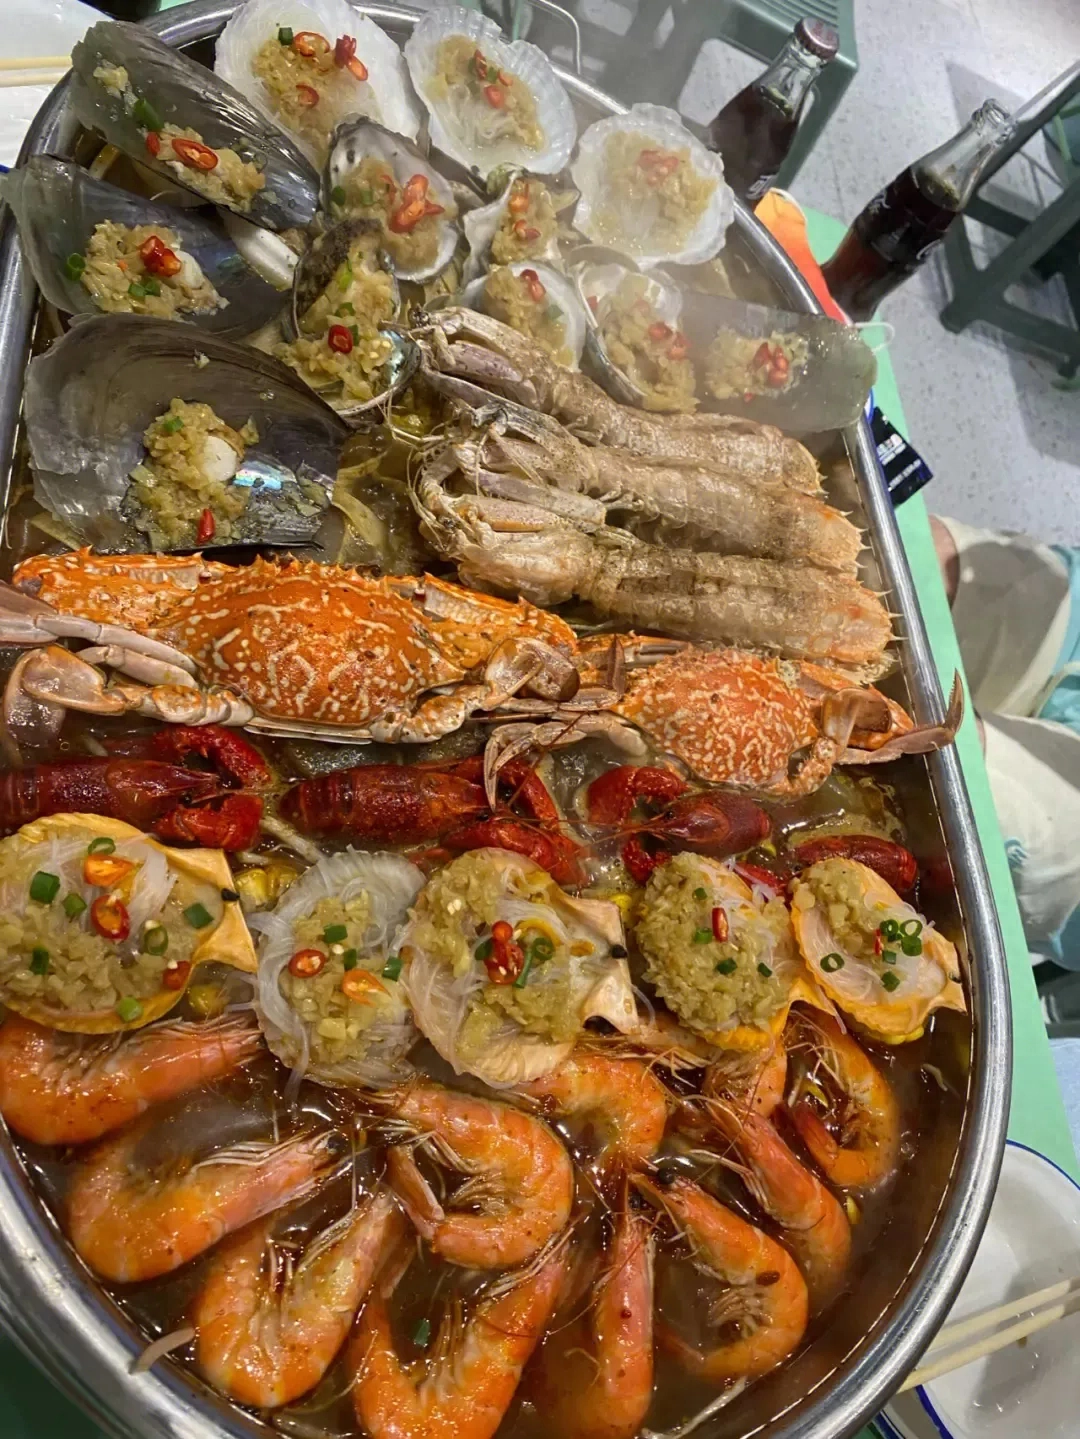 海鲜的味道和口感很大程度上取决于新鲜程度和烹饪技巧。在全球范围内，有许多地方以提供美味的海鲜而闻名。以下是一些被广泛认为是最好吃的海鲜之地：1. 青岛，中国：青岛位于